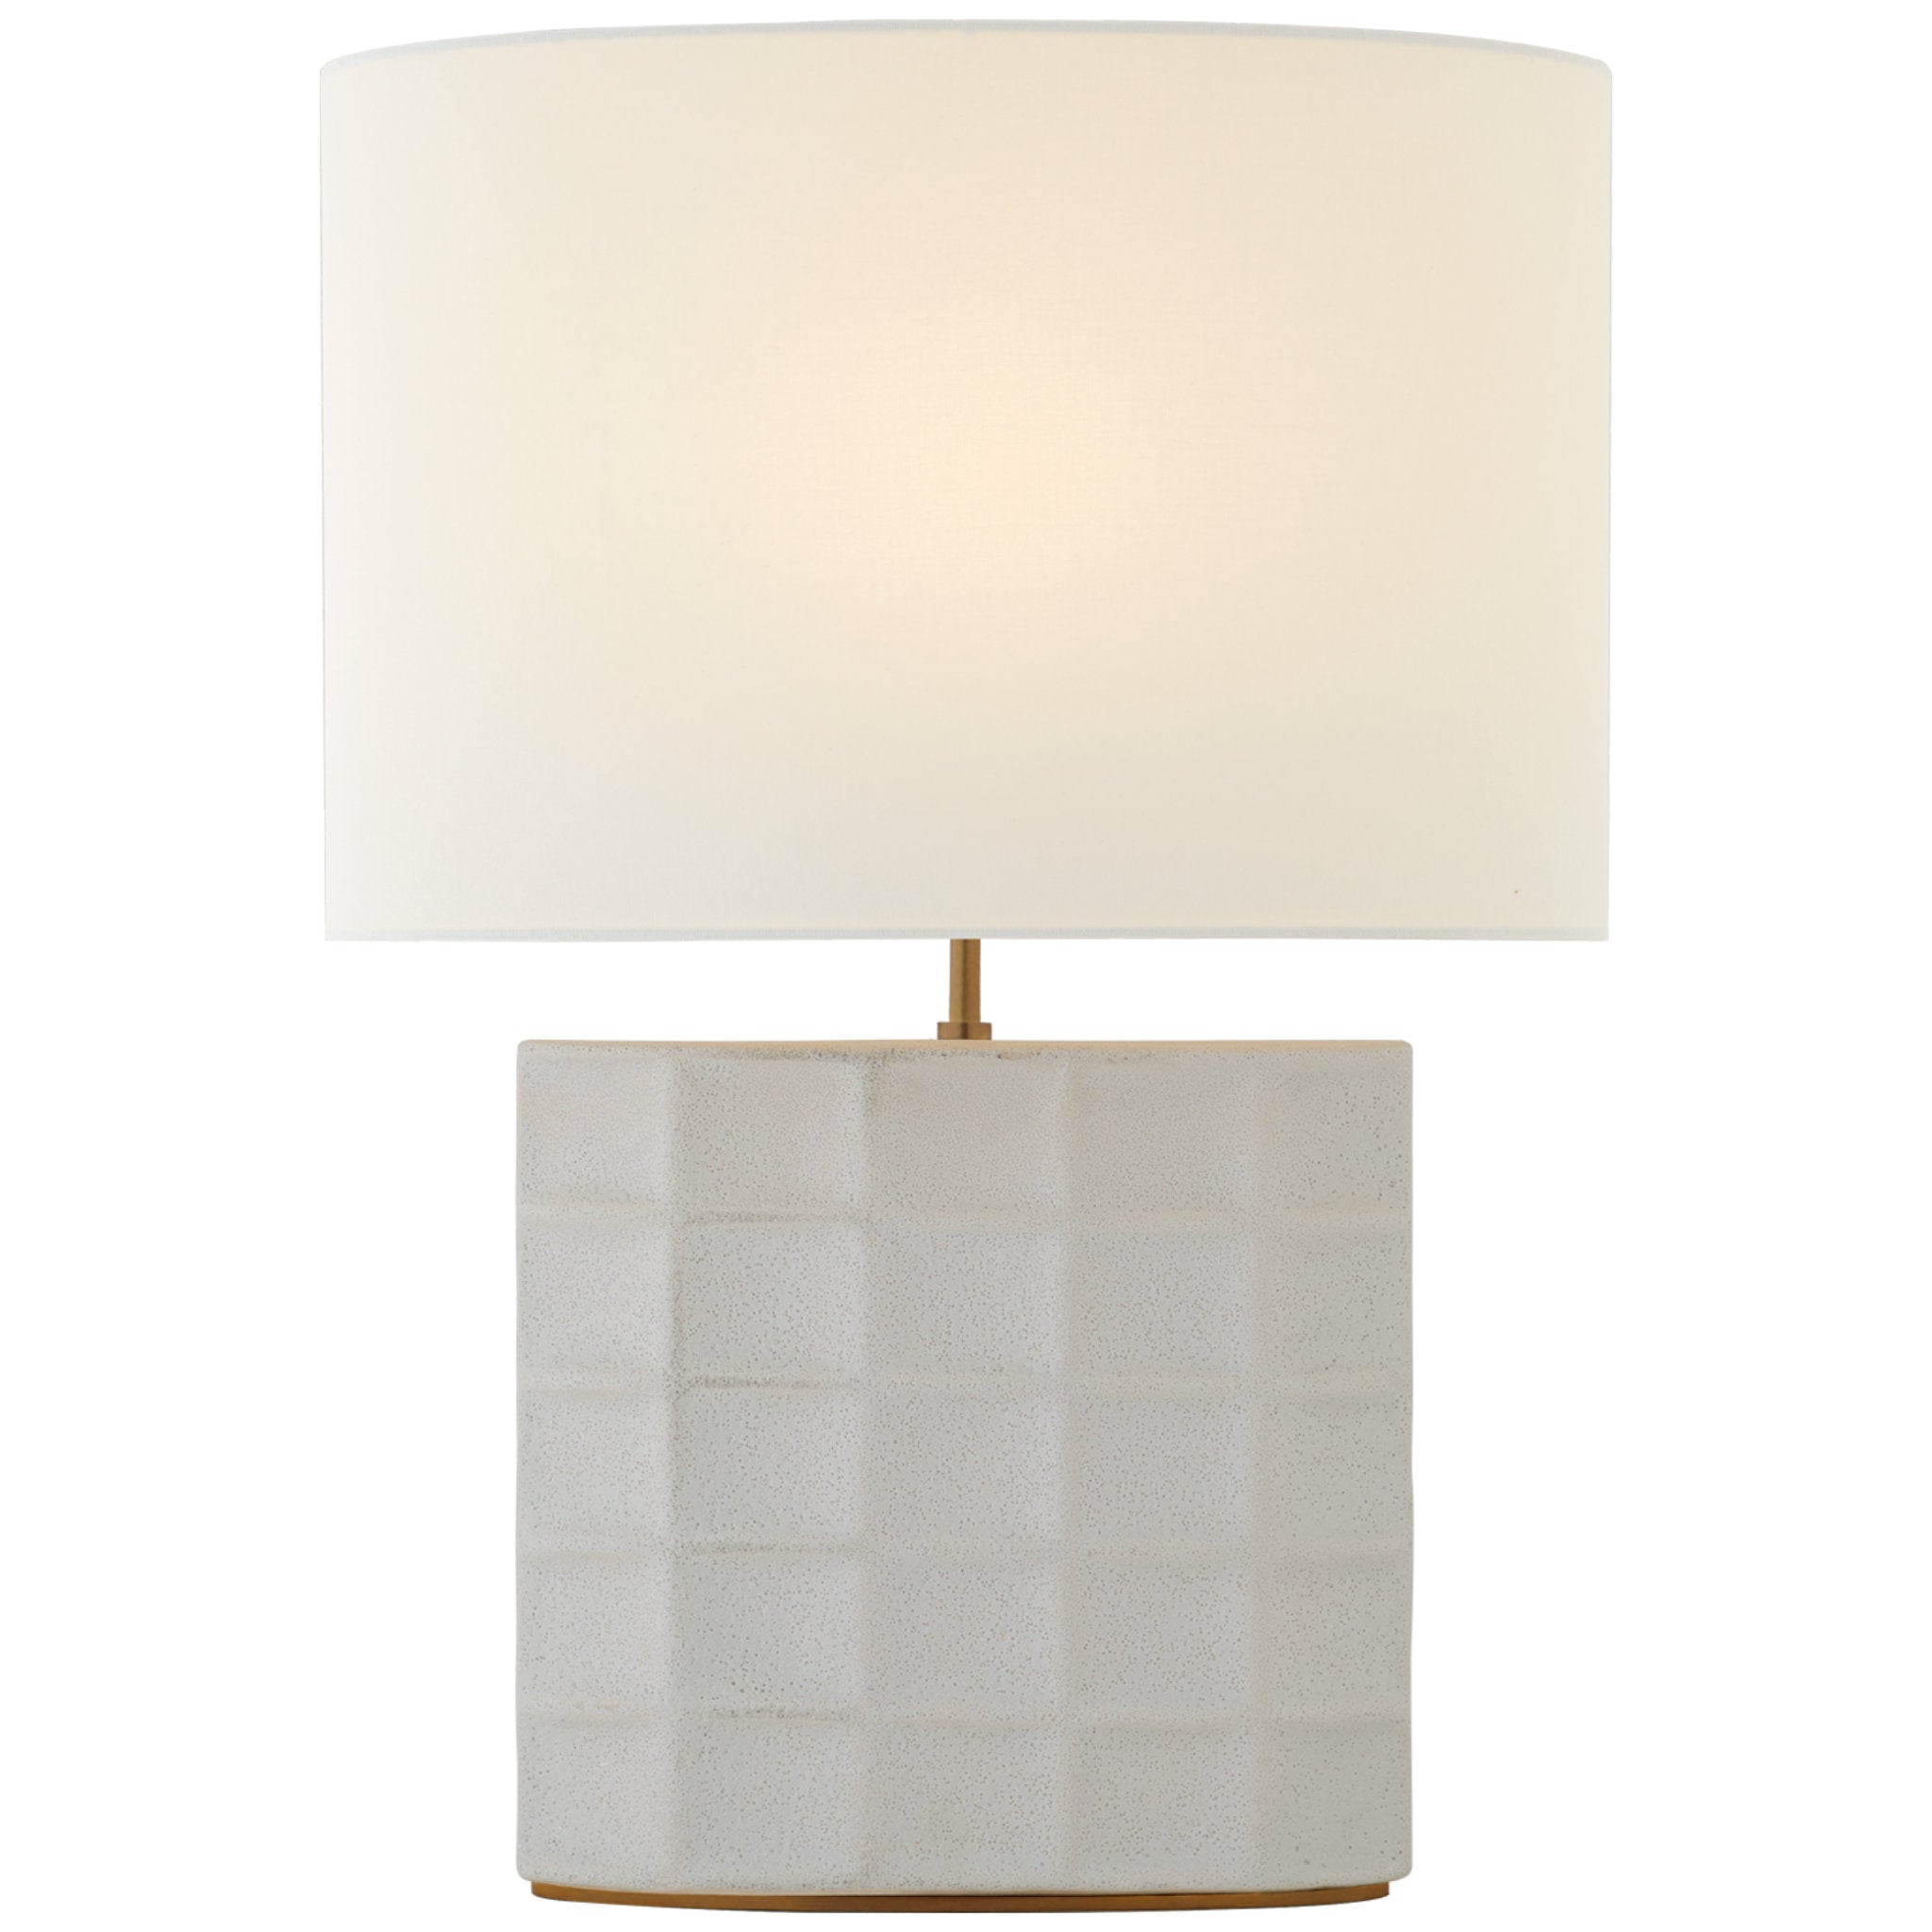 Kelly Wearstler Struttura Medium Table Lamp in Porous White with Linen Shade